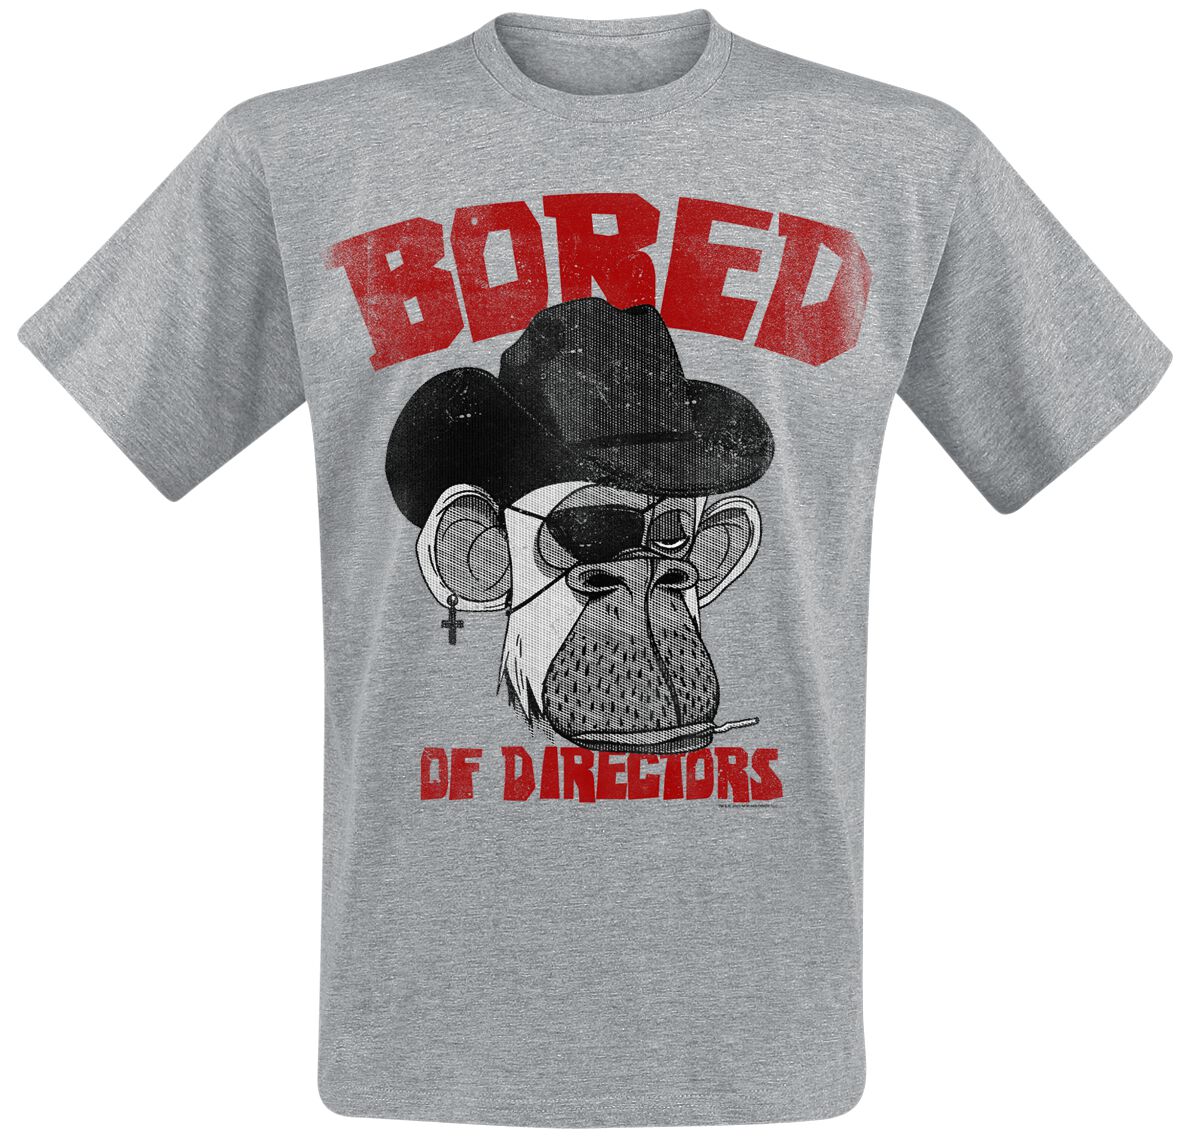 Bored Of Directors T-Shirt - Clint Apewood Vintage - S bis XXL - für Männer - Größe XXL - grau  - EMP exklusives Merchandise!